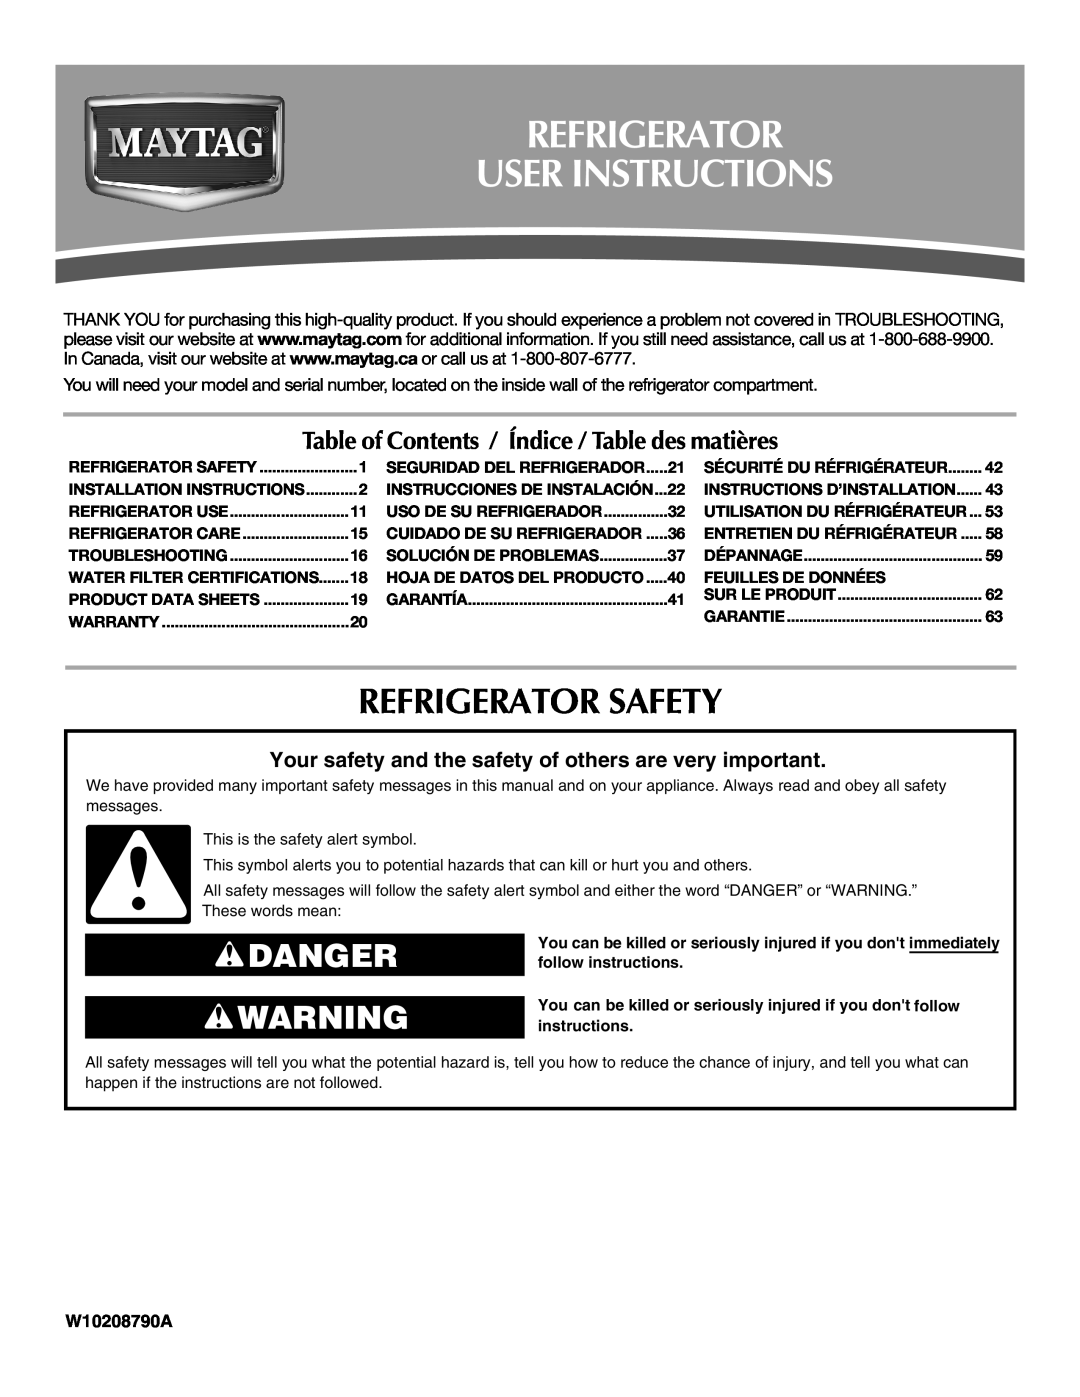 Maytag MFD2562VEW installation instructions Refrigerator User Instructions, Refrigerator Safety, Danger, W10208790A 